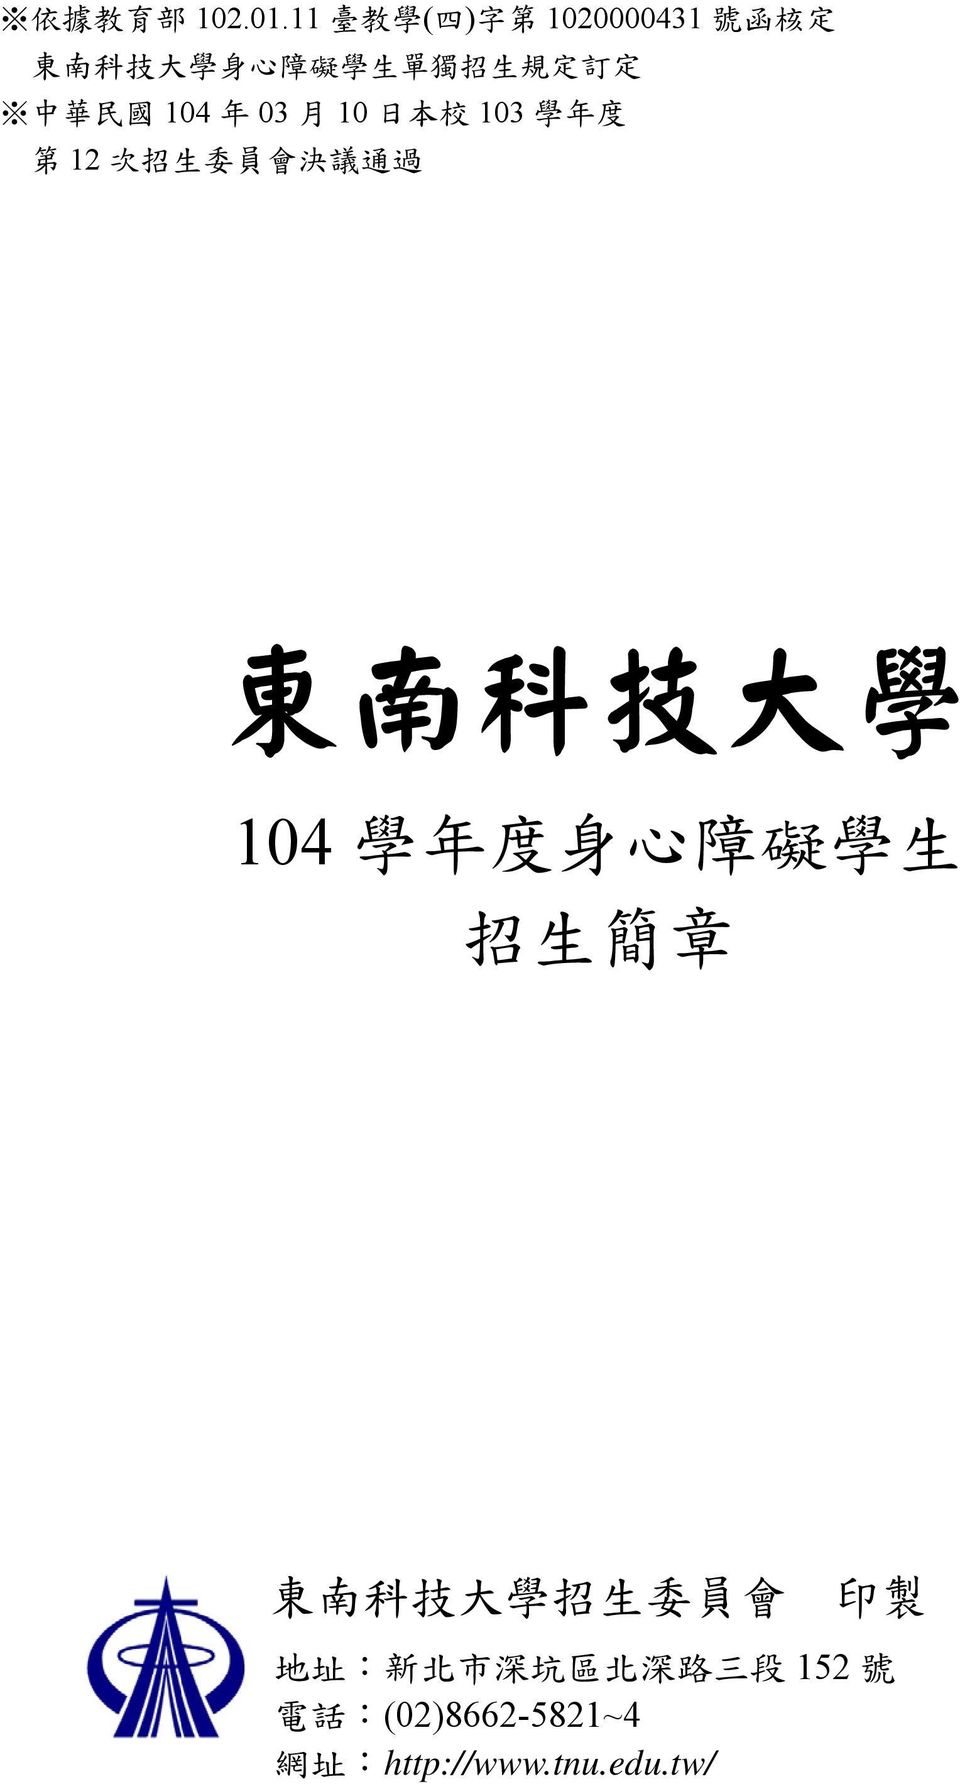 定 中 華 民 國 104 年 03 月 10 日 本 校 103 學 年 度 第 12 次 招 生 委 員 會 決 議 通 過 東 南 科 技 大 學